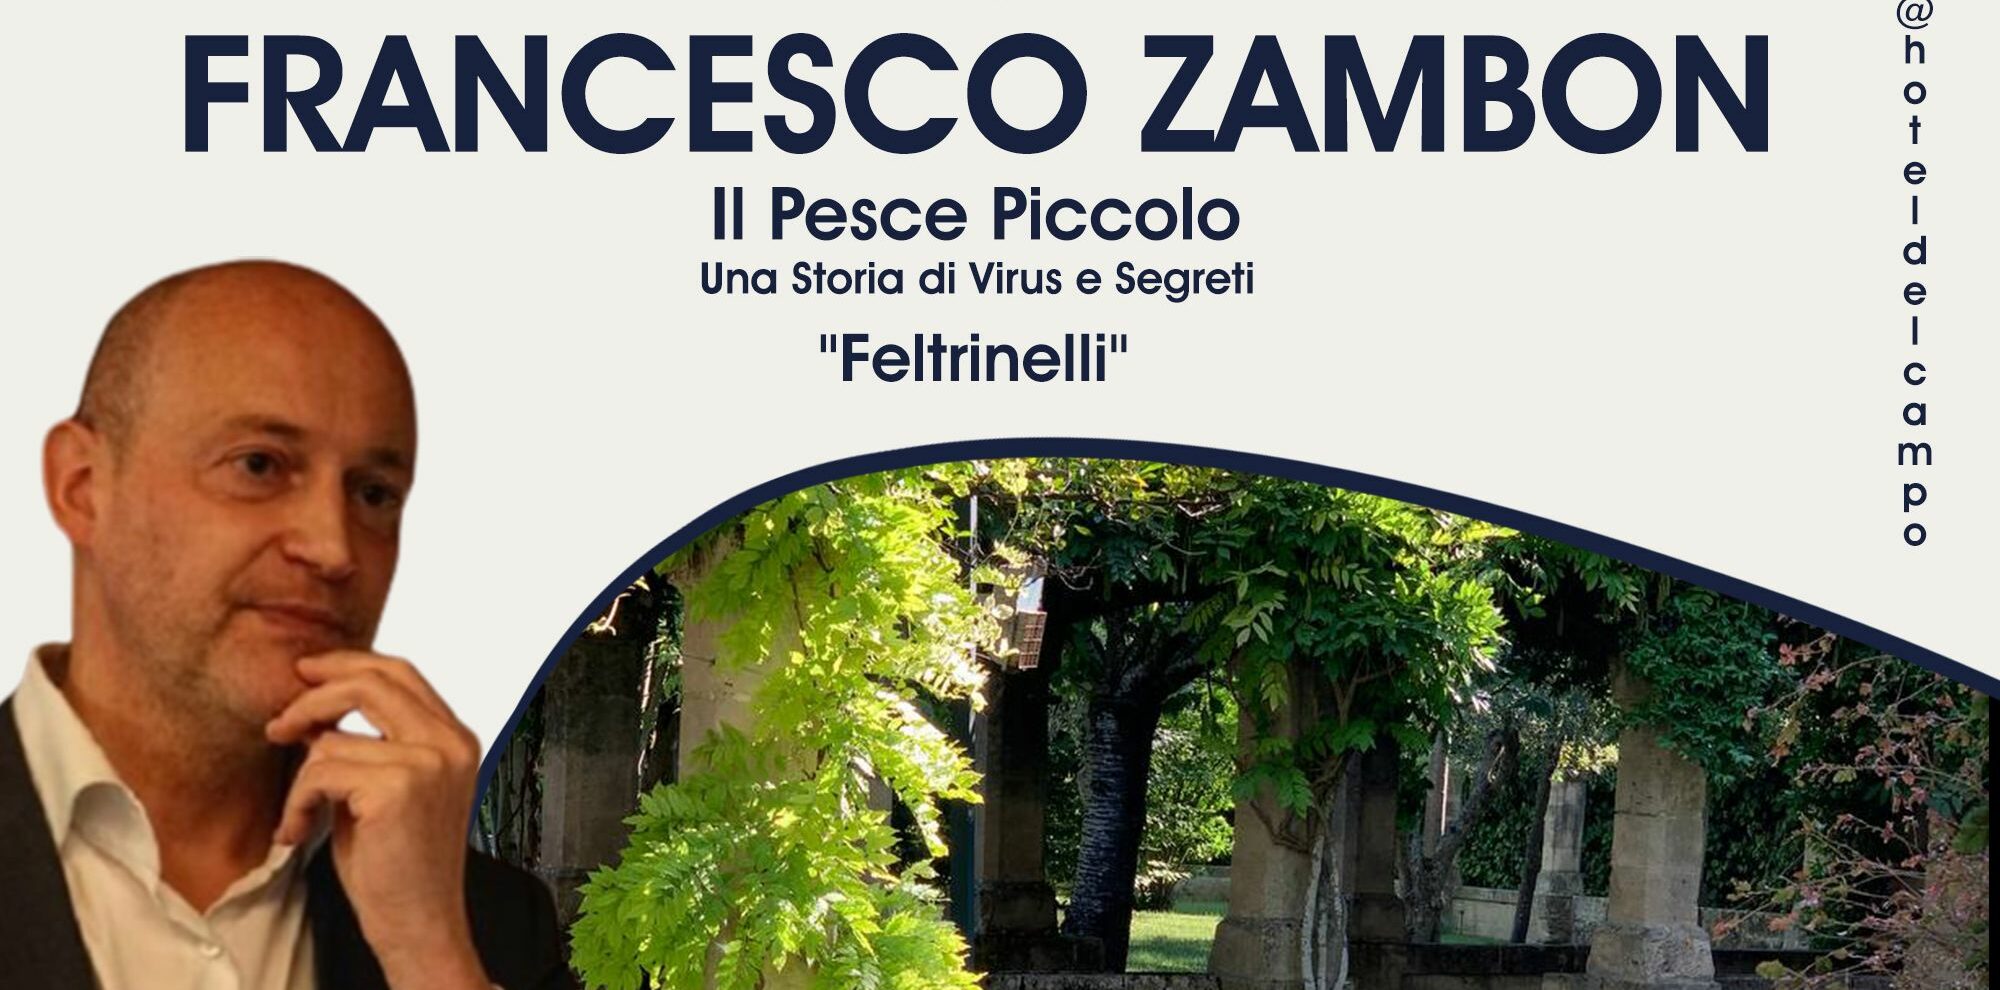 Matera, il 22 l’Hotel del Campo e la Libreria Di Giulio presentano “Il Pesce Piccolo” di Francesco Zambon